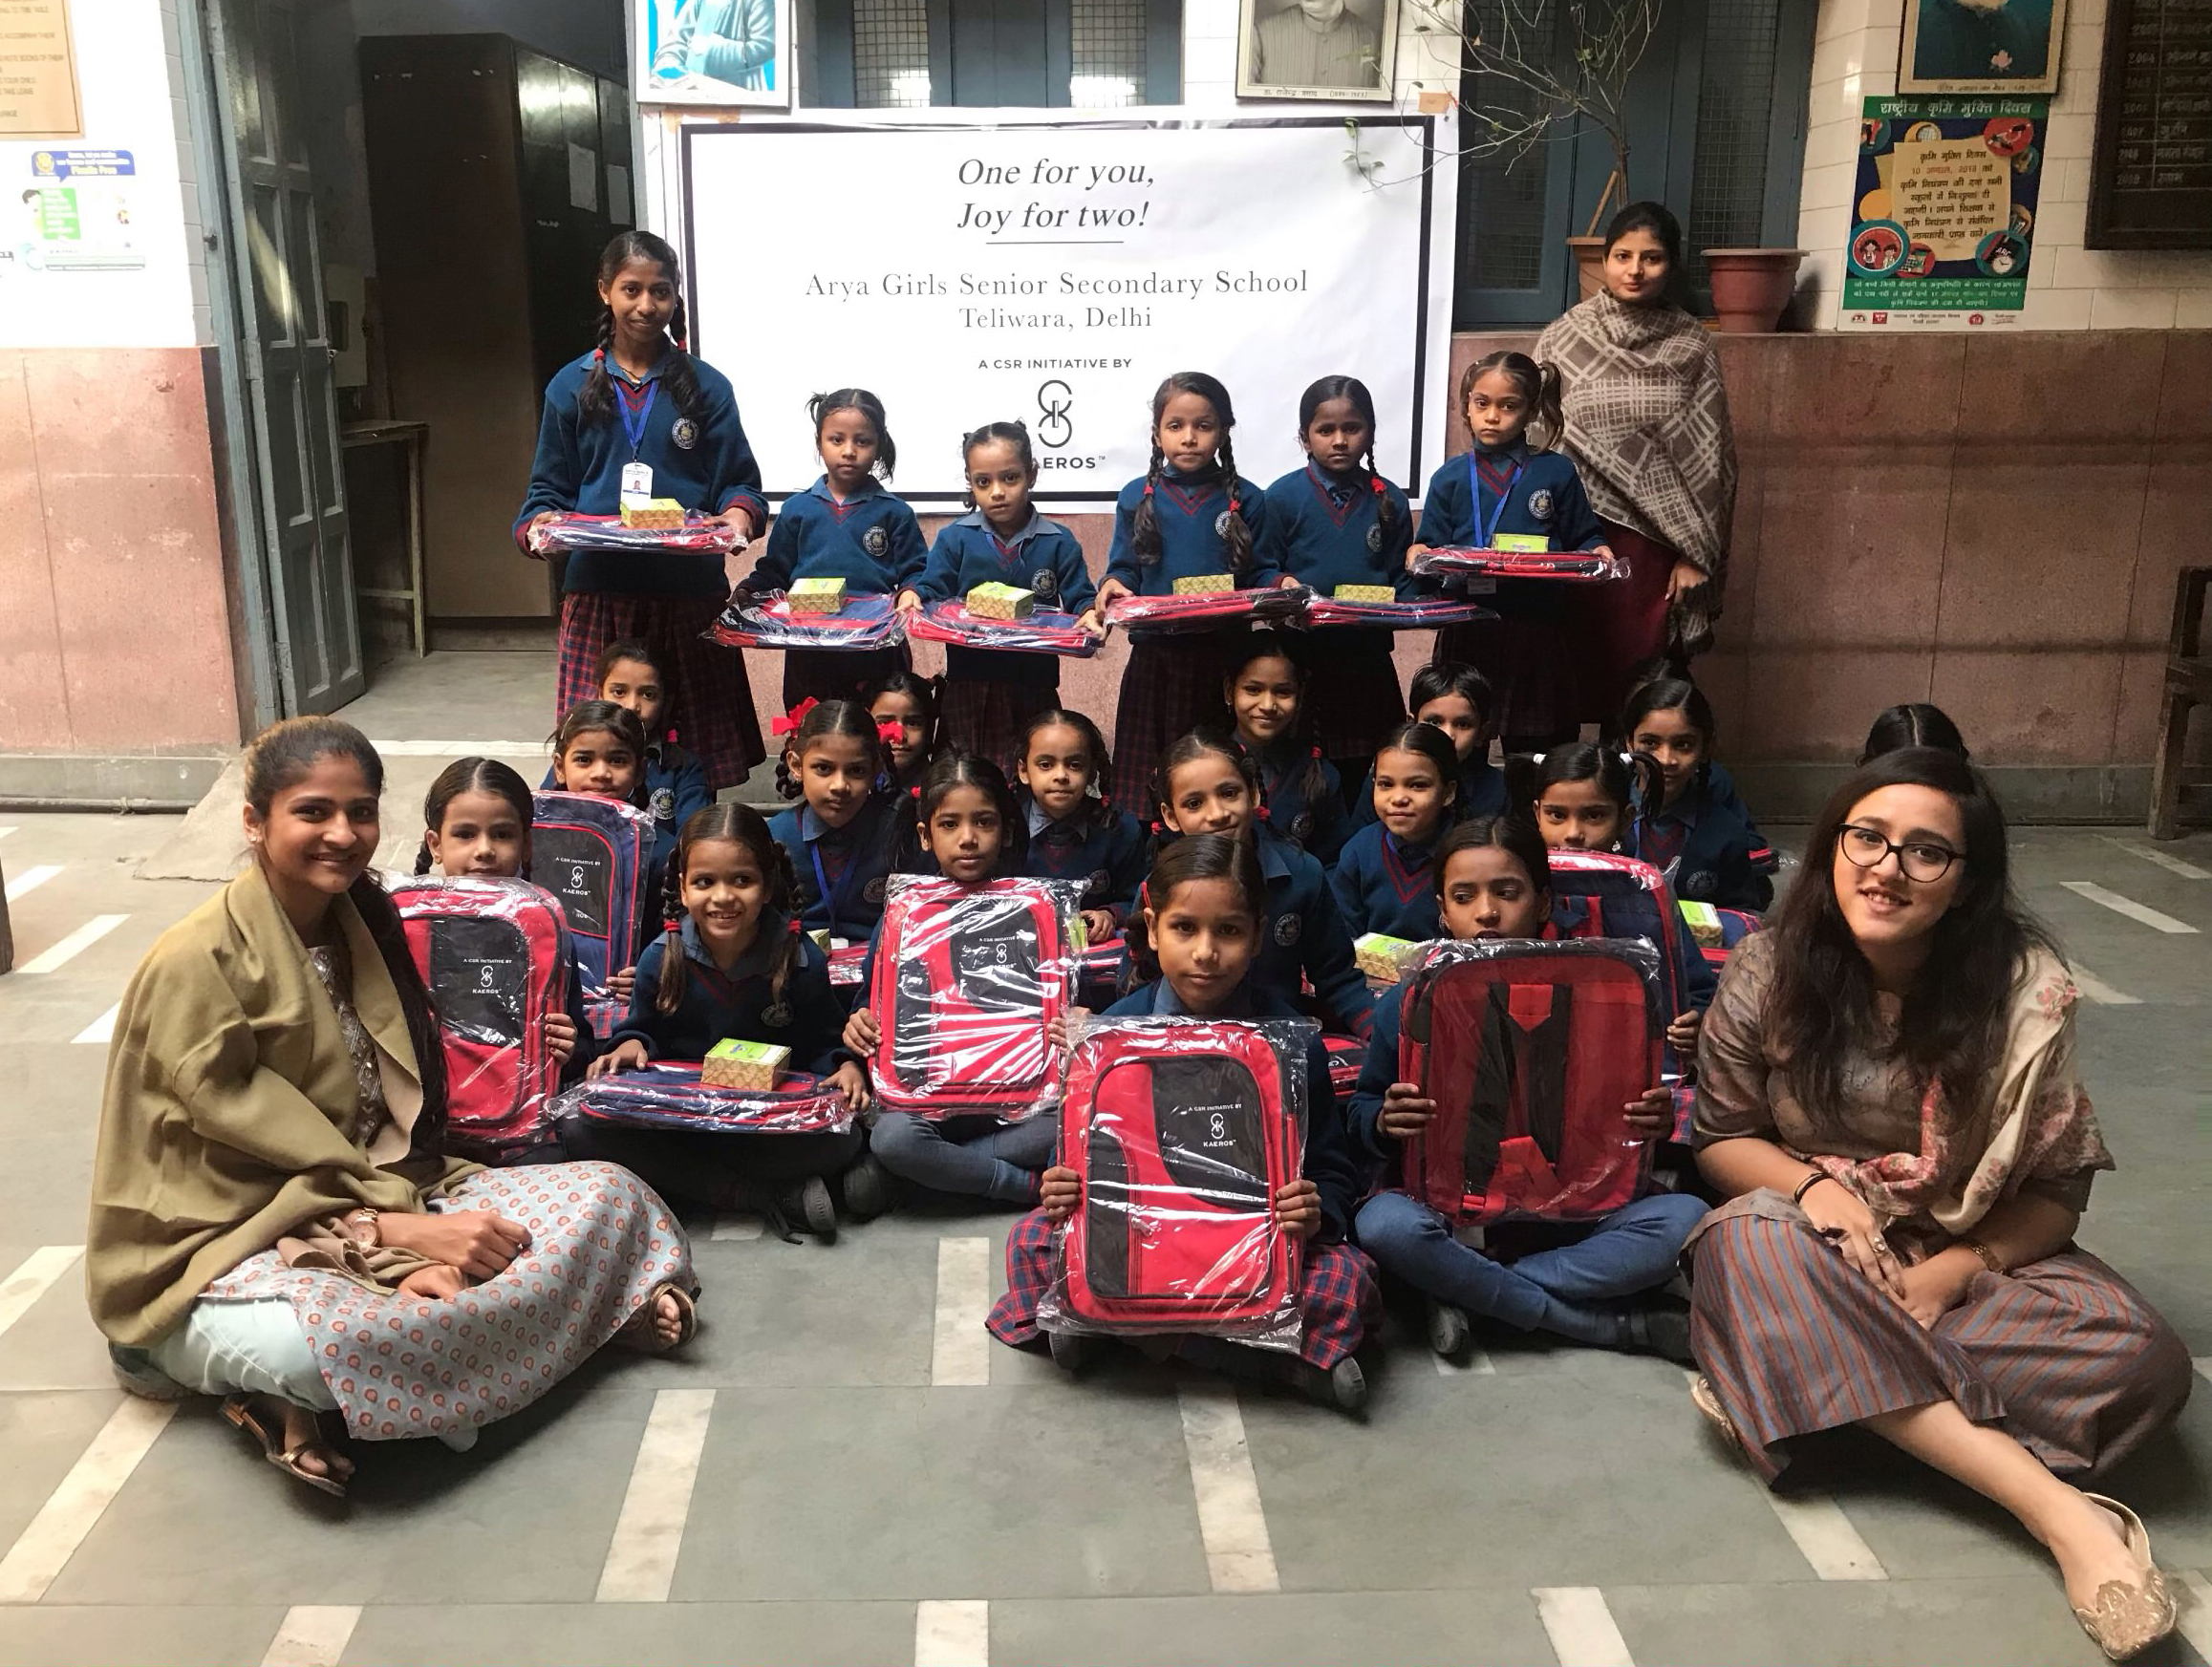 KAEROS distribute school Bags to Girls at Arya Girls Sr. Sec. School in Teliwara, Delhi